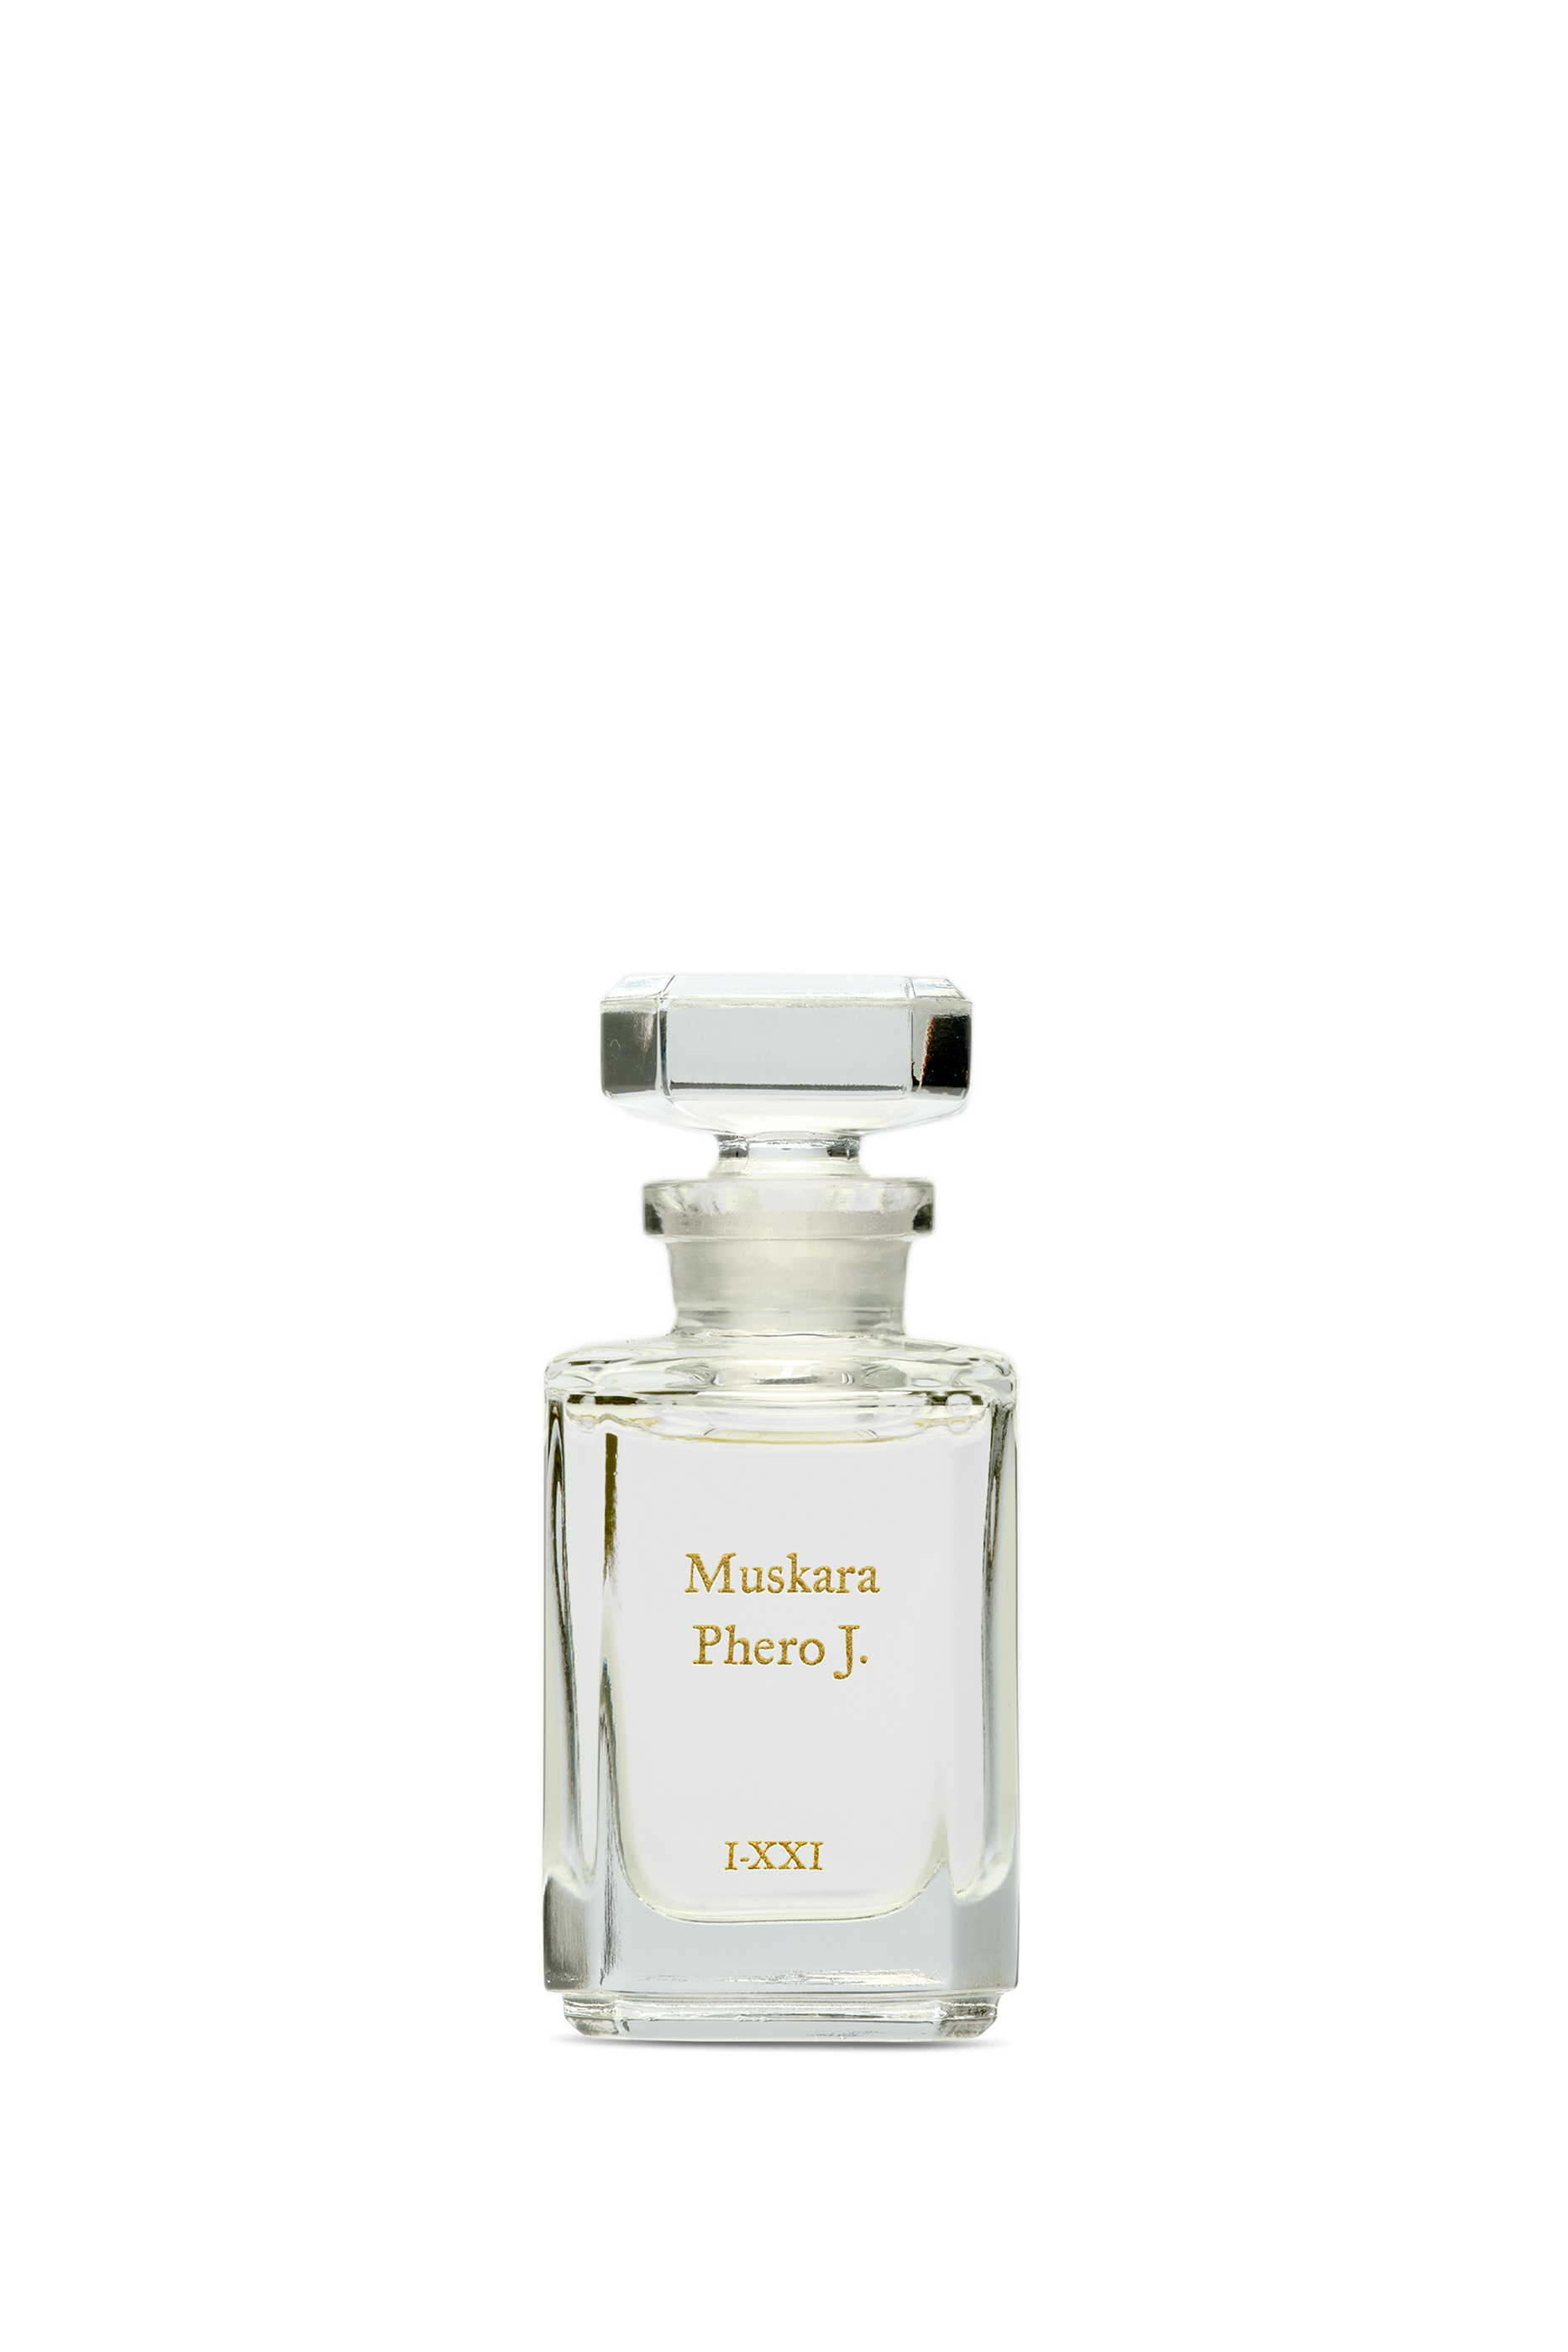 Buy Muskara Phero J. Perfume Oil for SAR 1207.00 | BloomingDales SA